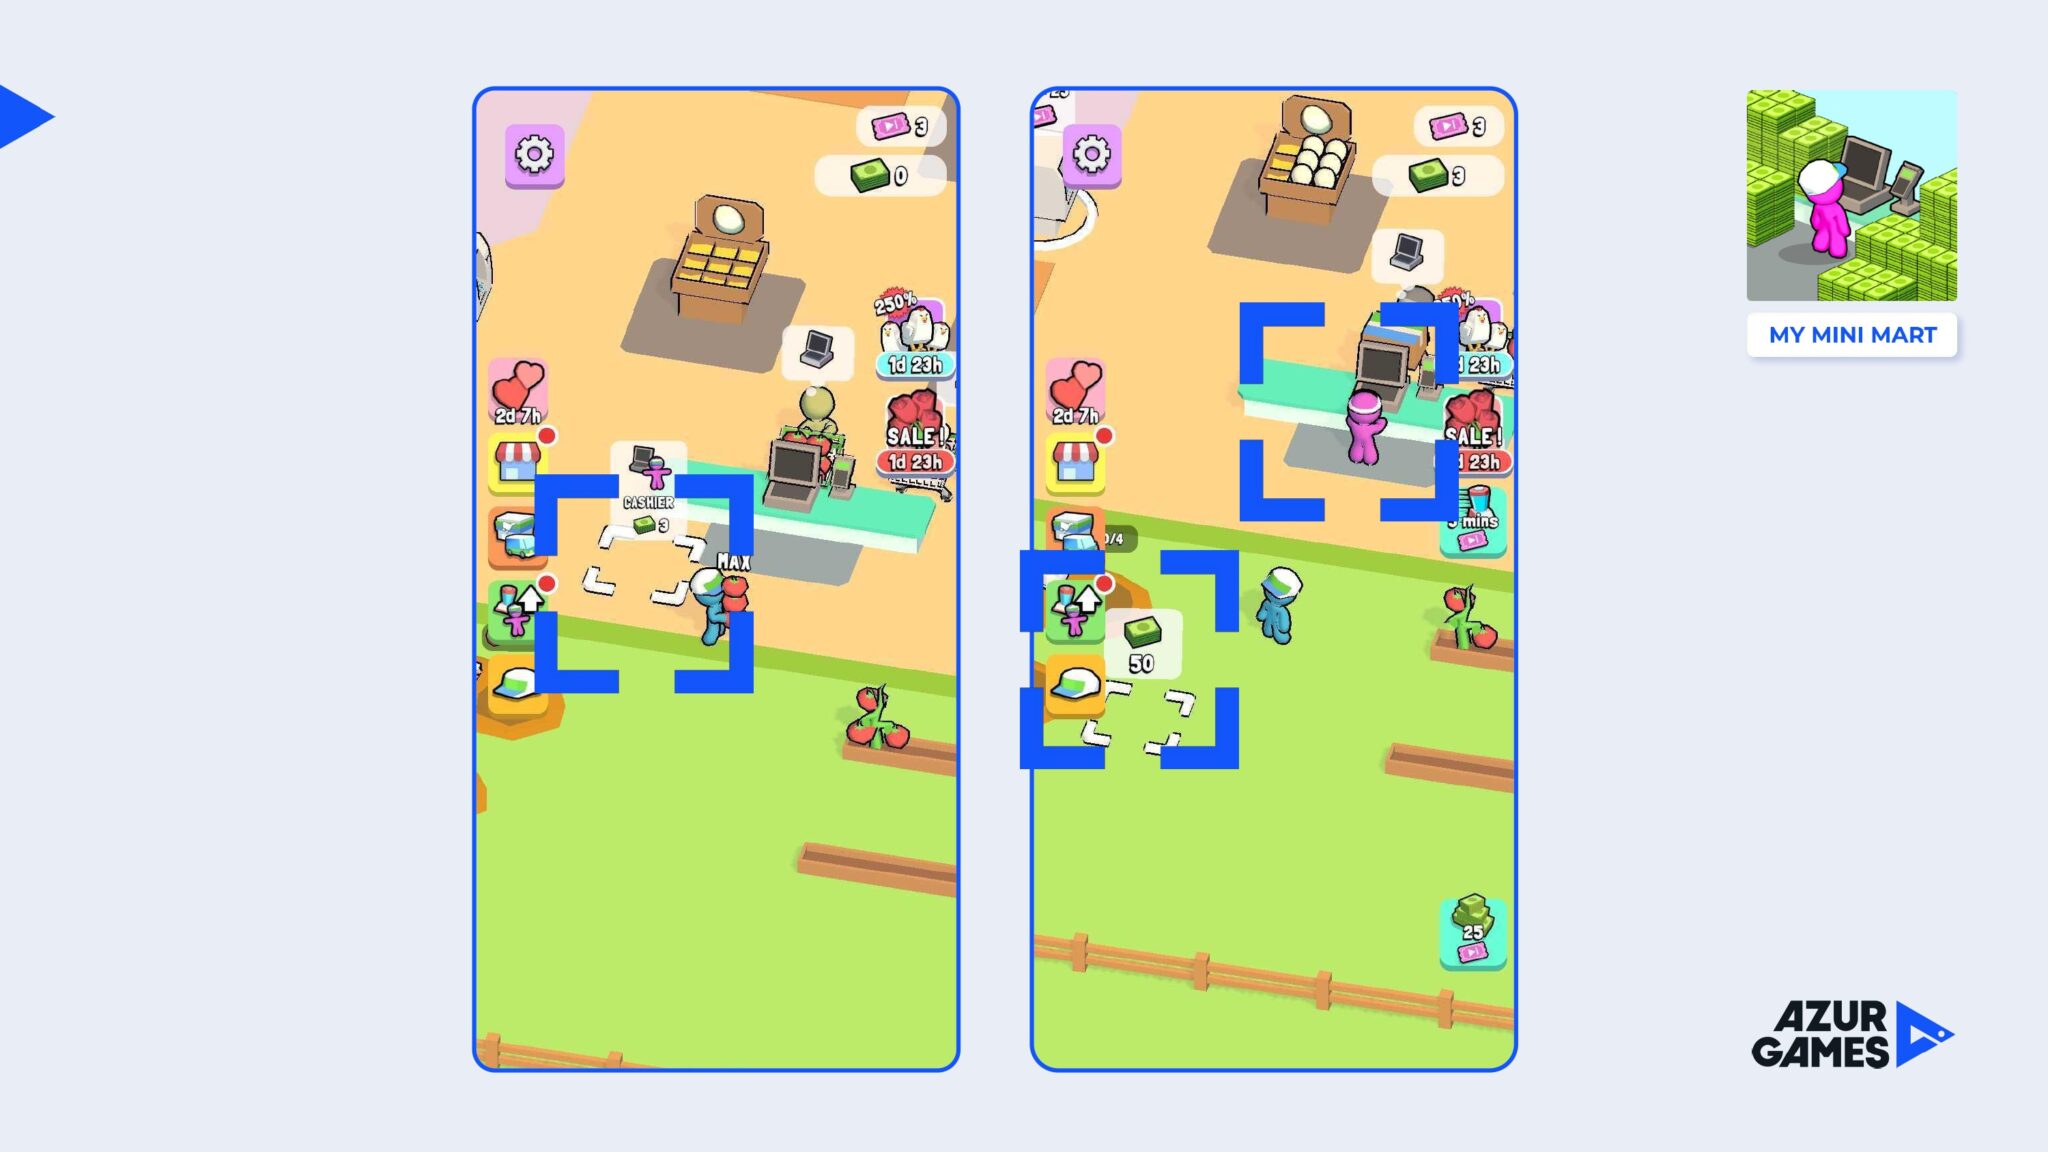 My mini mart рекламы. Геймдизайн персонажи мобильная игра пекарня. Bbeьx_holawn в игре ничего.